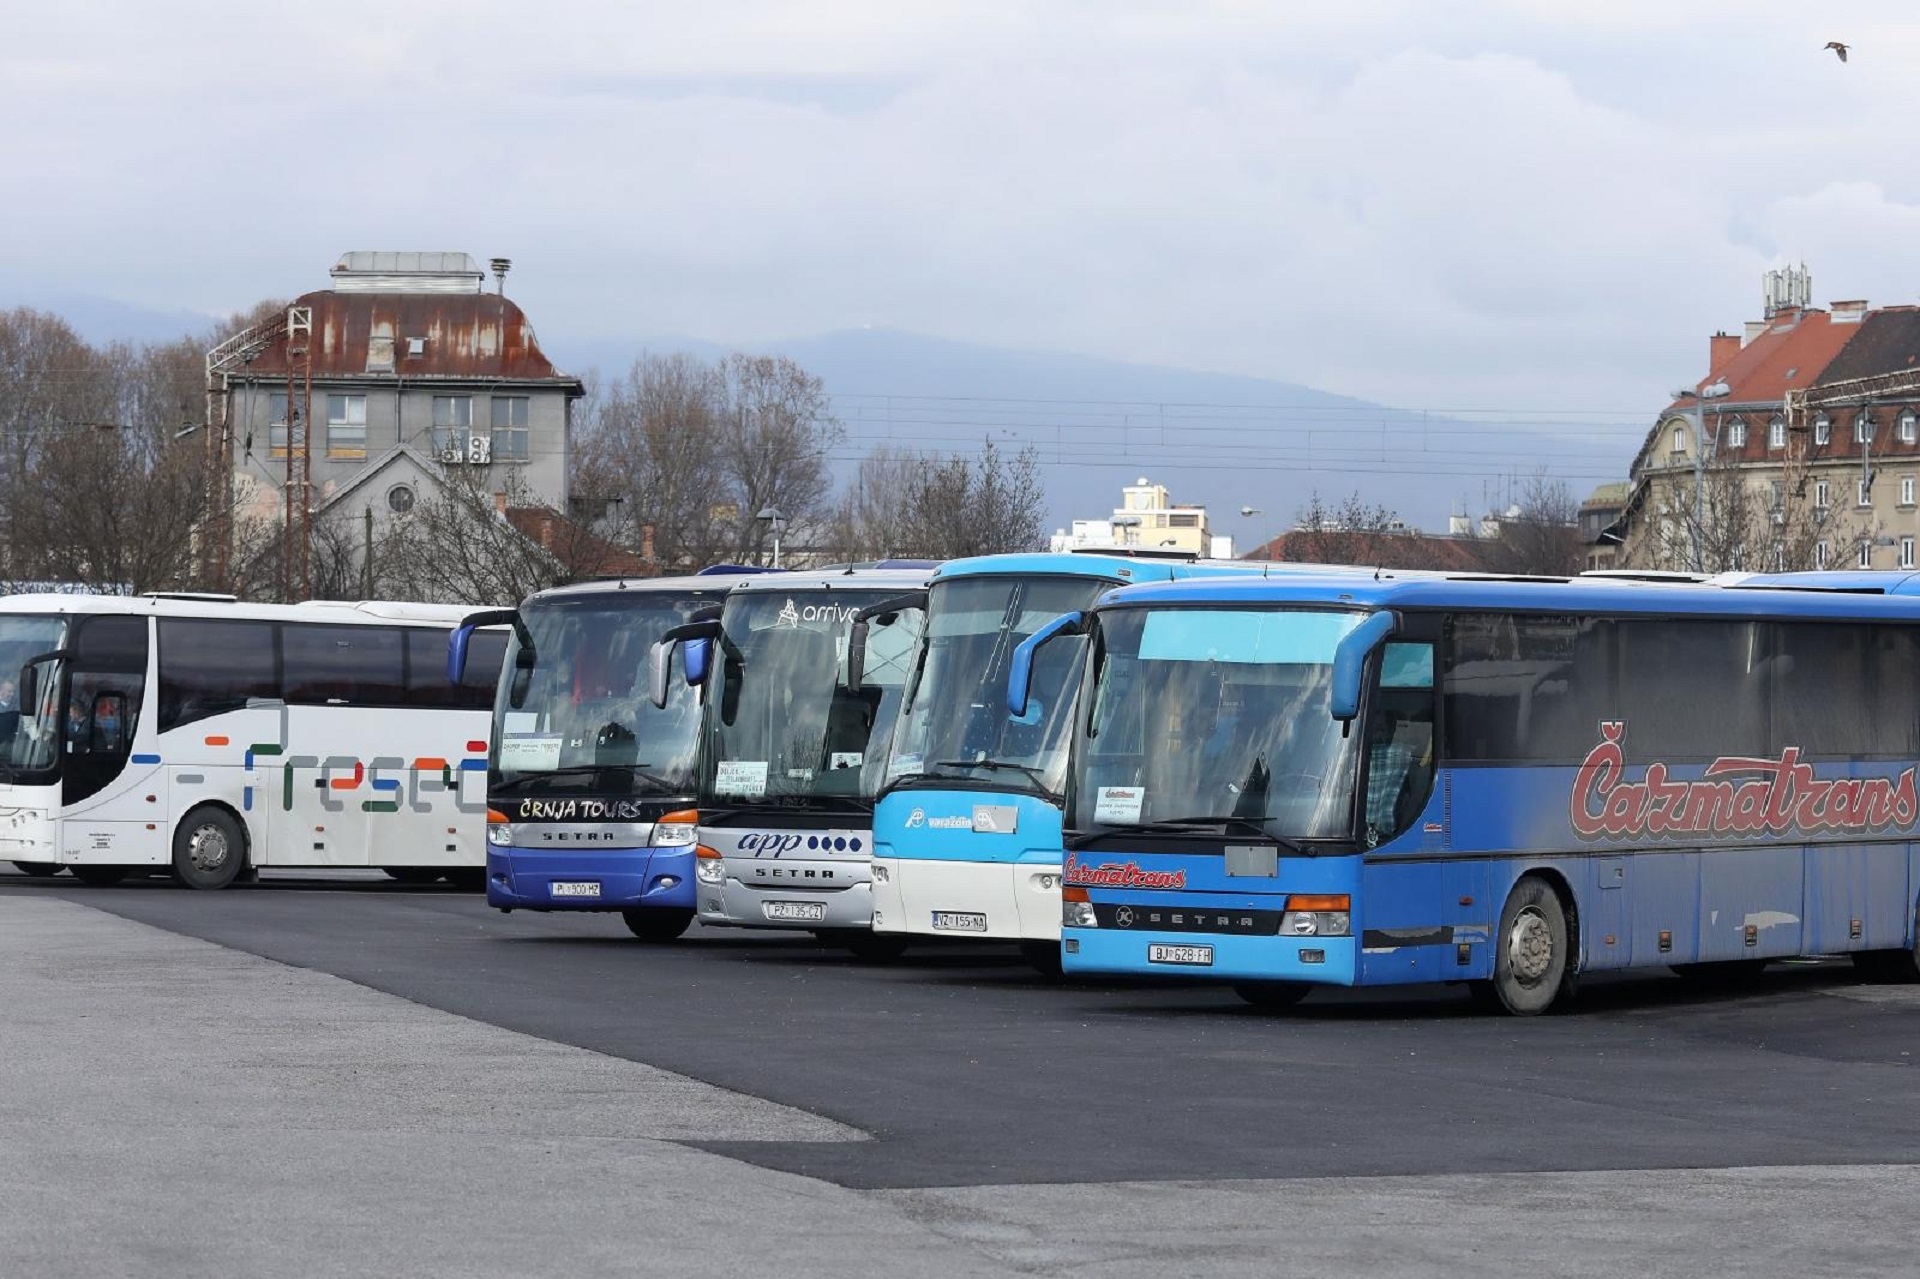 11.02.2020., Zagreb - Autobusni kolodvor Zagreb. Photo: Patrik Macek/PIXSELL